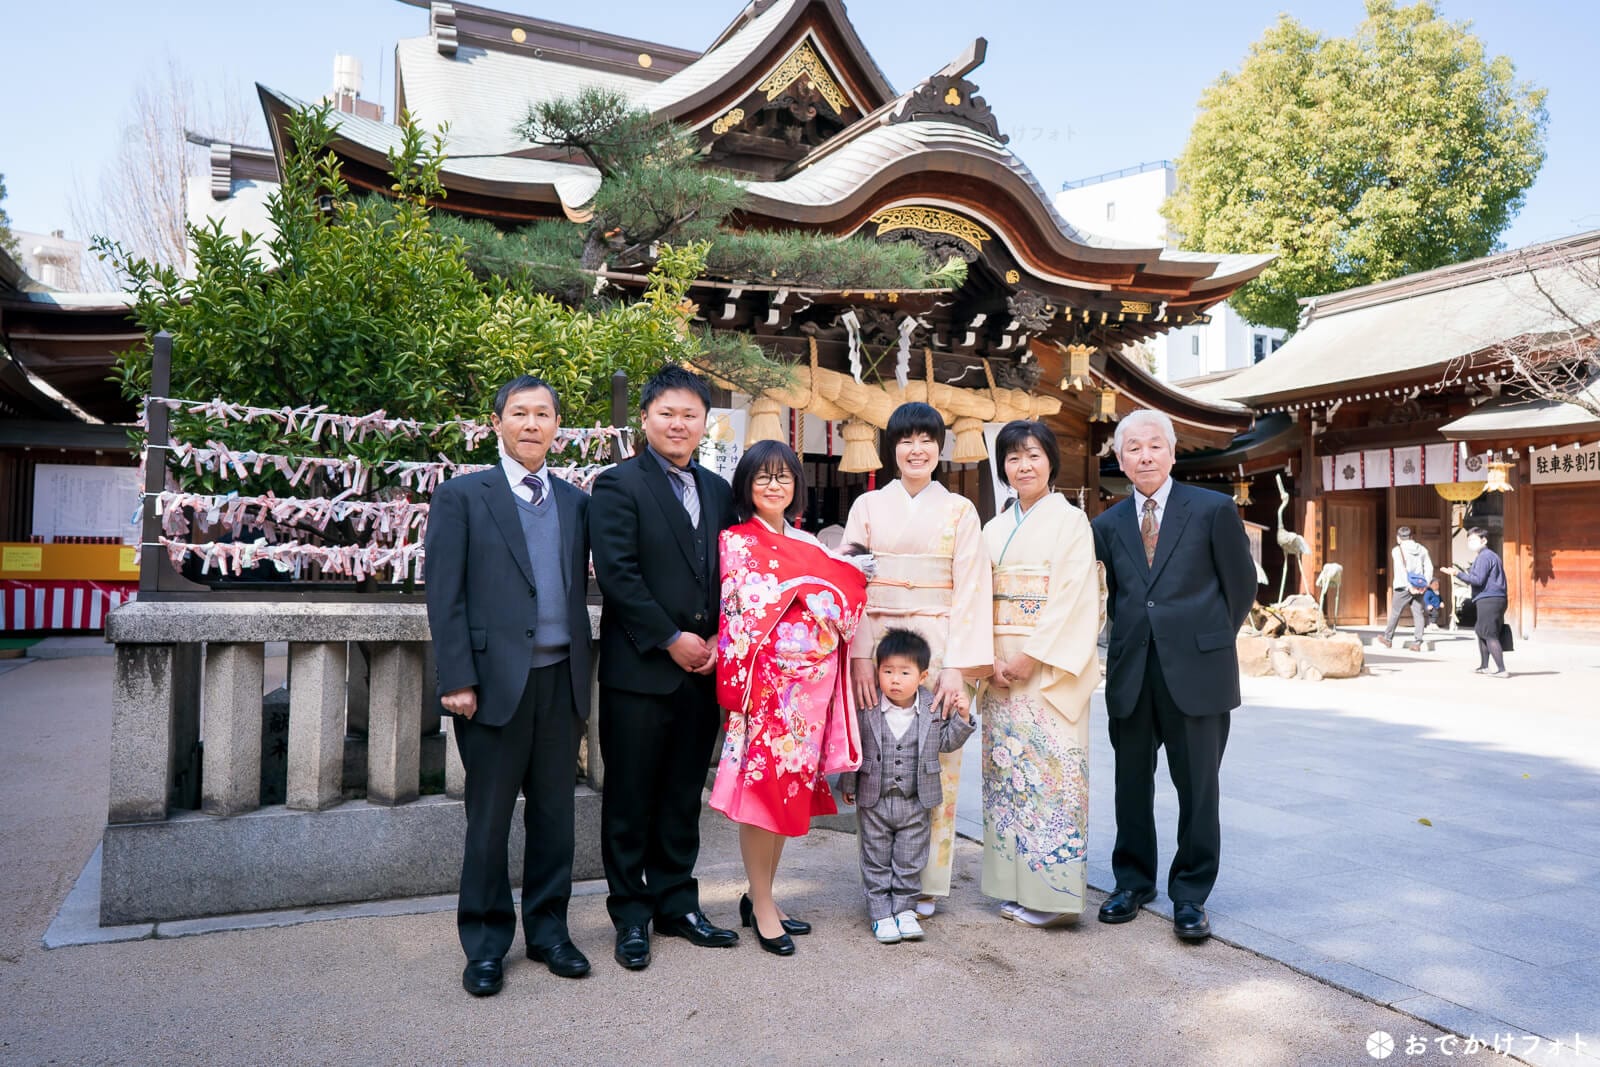 お宮参りは赤ちゃんの成長を祈願する日本の伝統行事